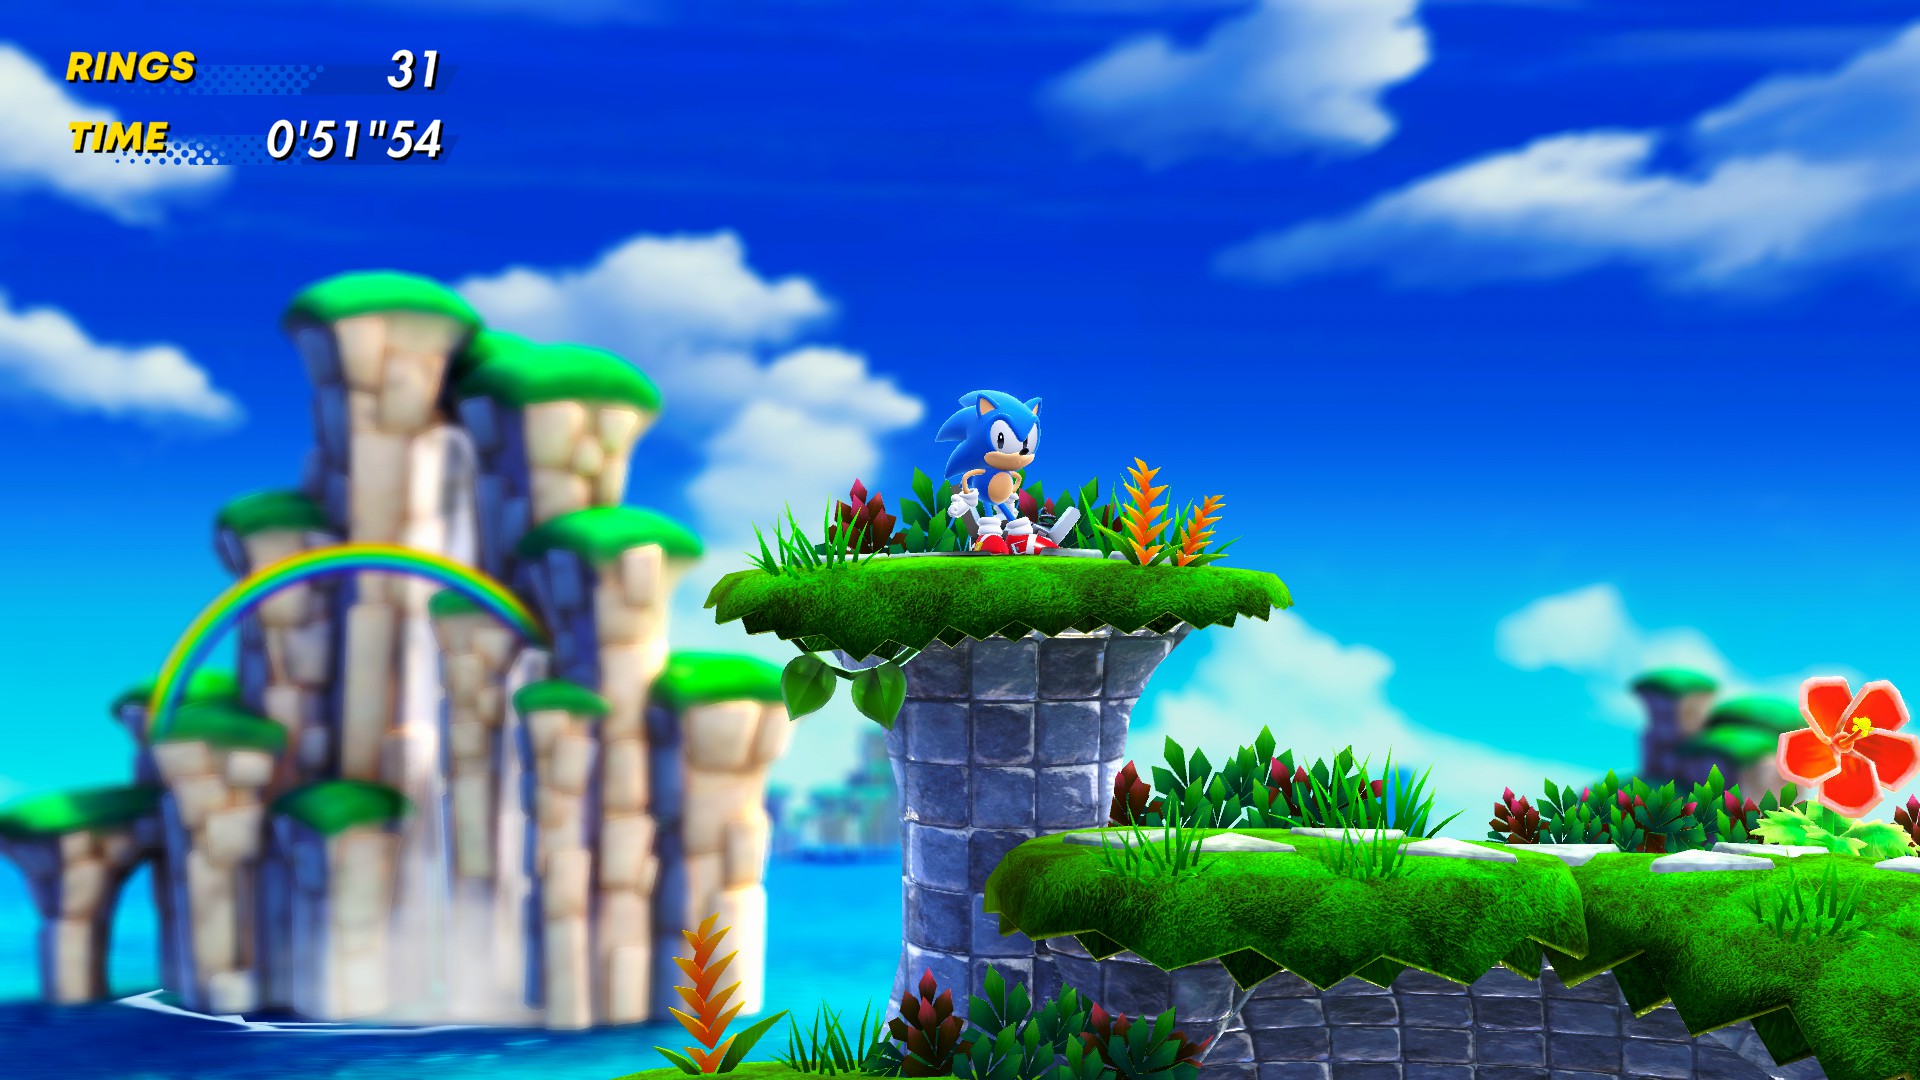 Sonic Superstars' é o novo jogo 2D da franquia